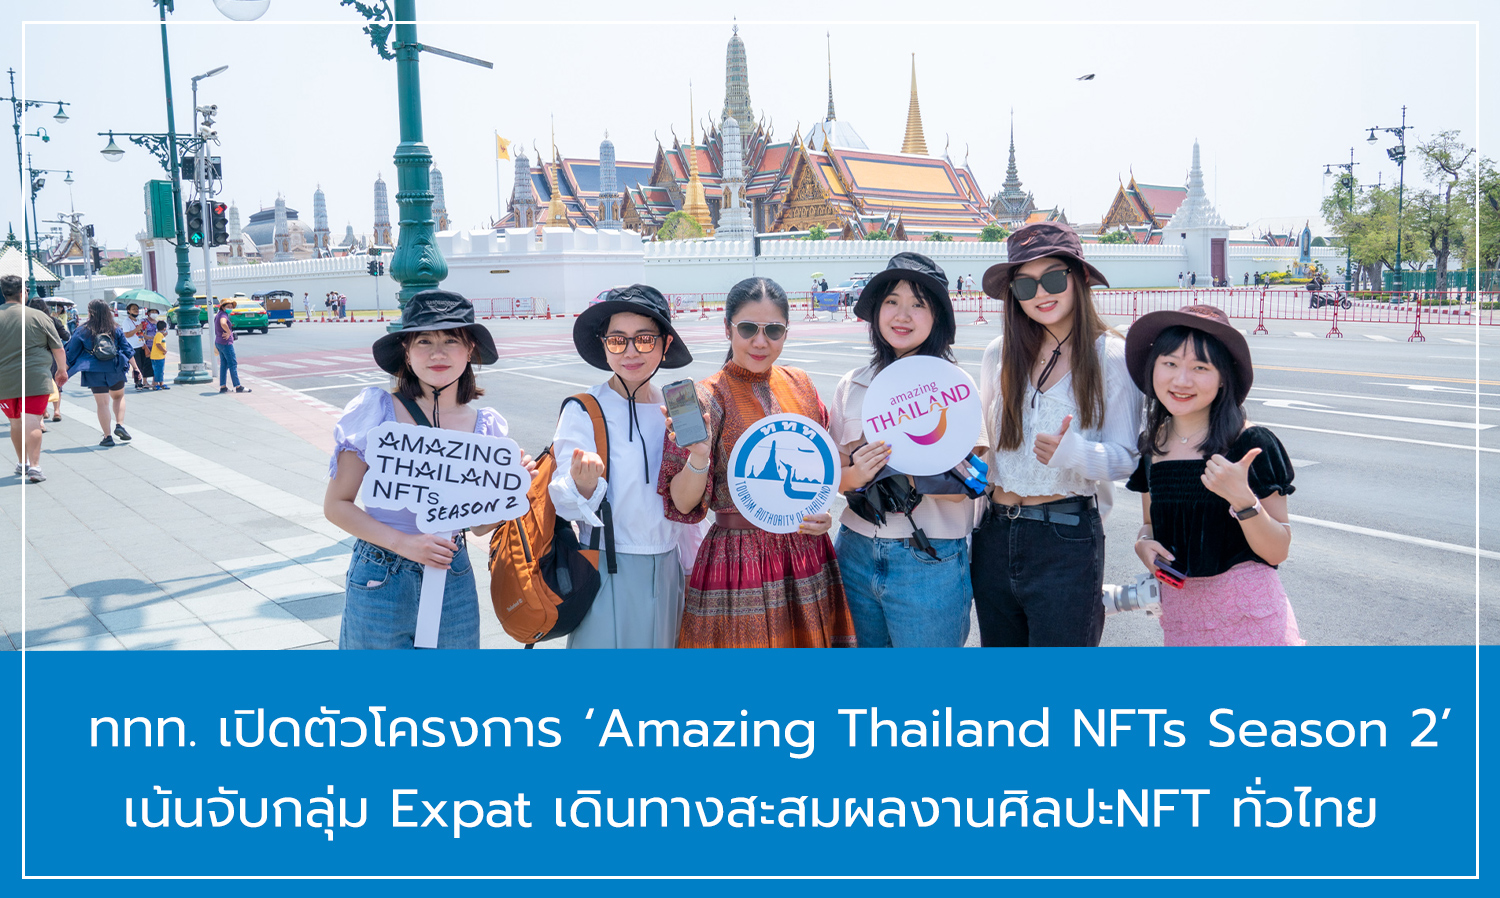 ททท. เปิดตัวโครงการ ‘Amazing Thailand NFTs Season 2’ เน้นจับกลุ่ม Expat เดินทางสะสมผลงานศิลปะNFT ทั่วไทย  